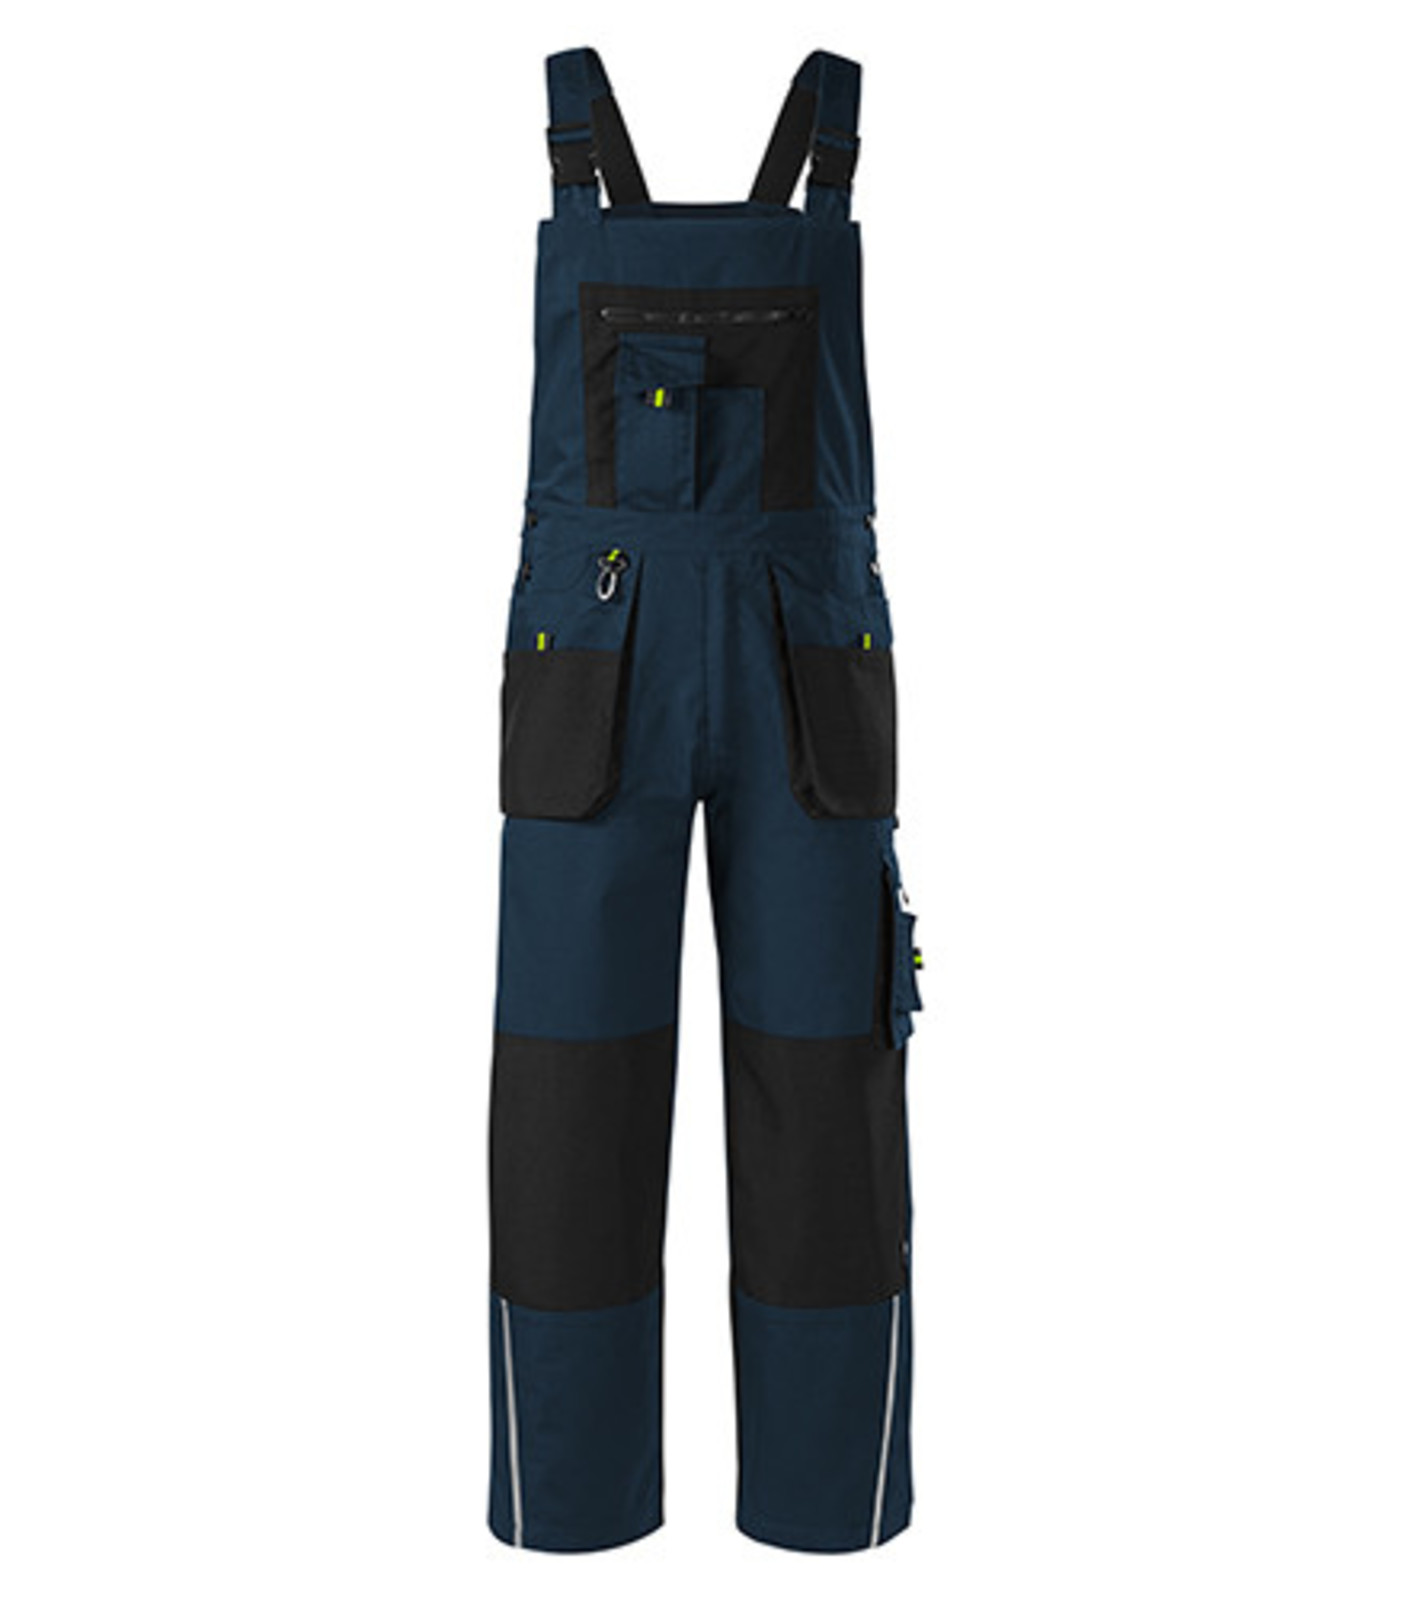 Montérkové nohavice s náprsenkou Adler Ranger W04 - veľkosť: 44-46, farba: tmavo modrá